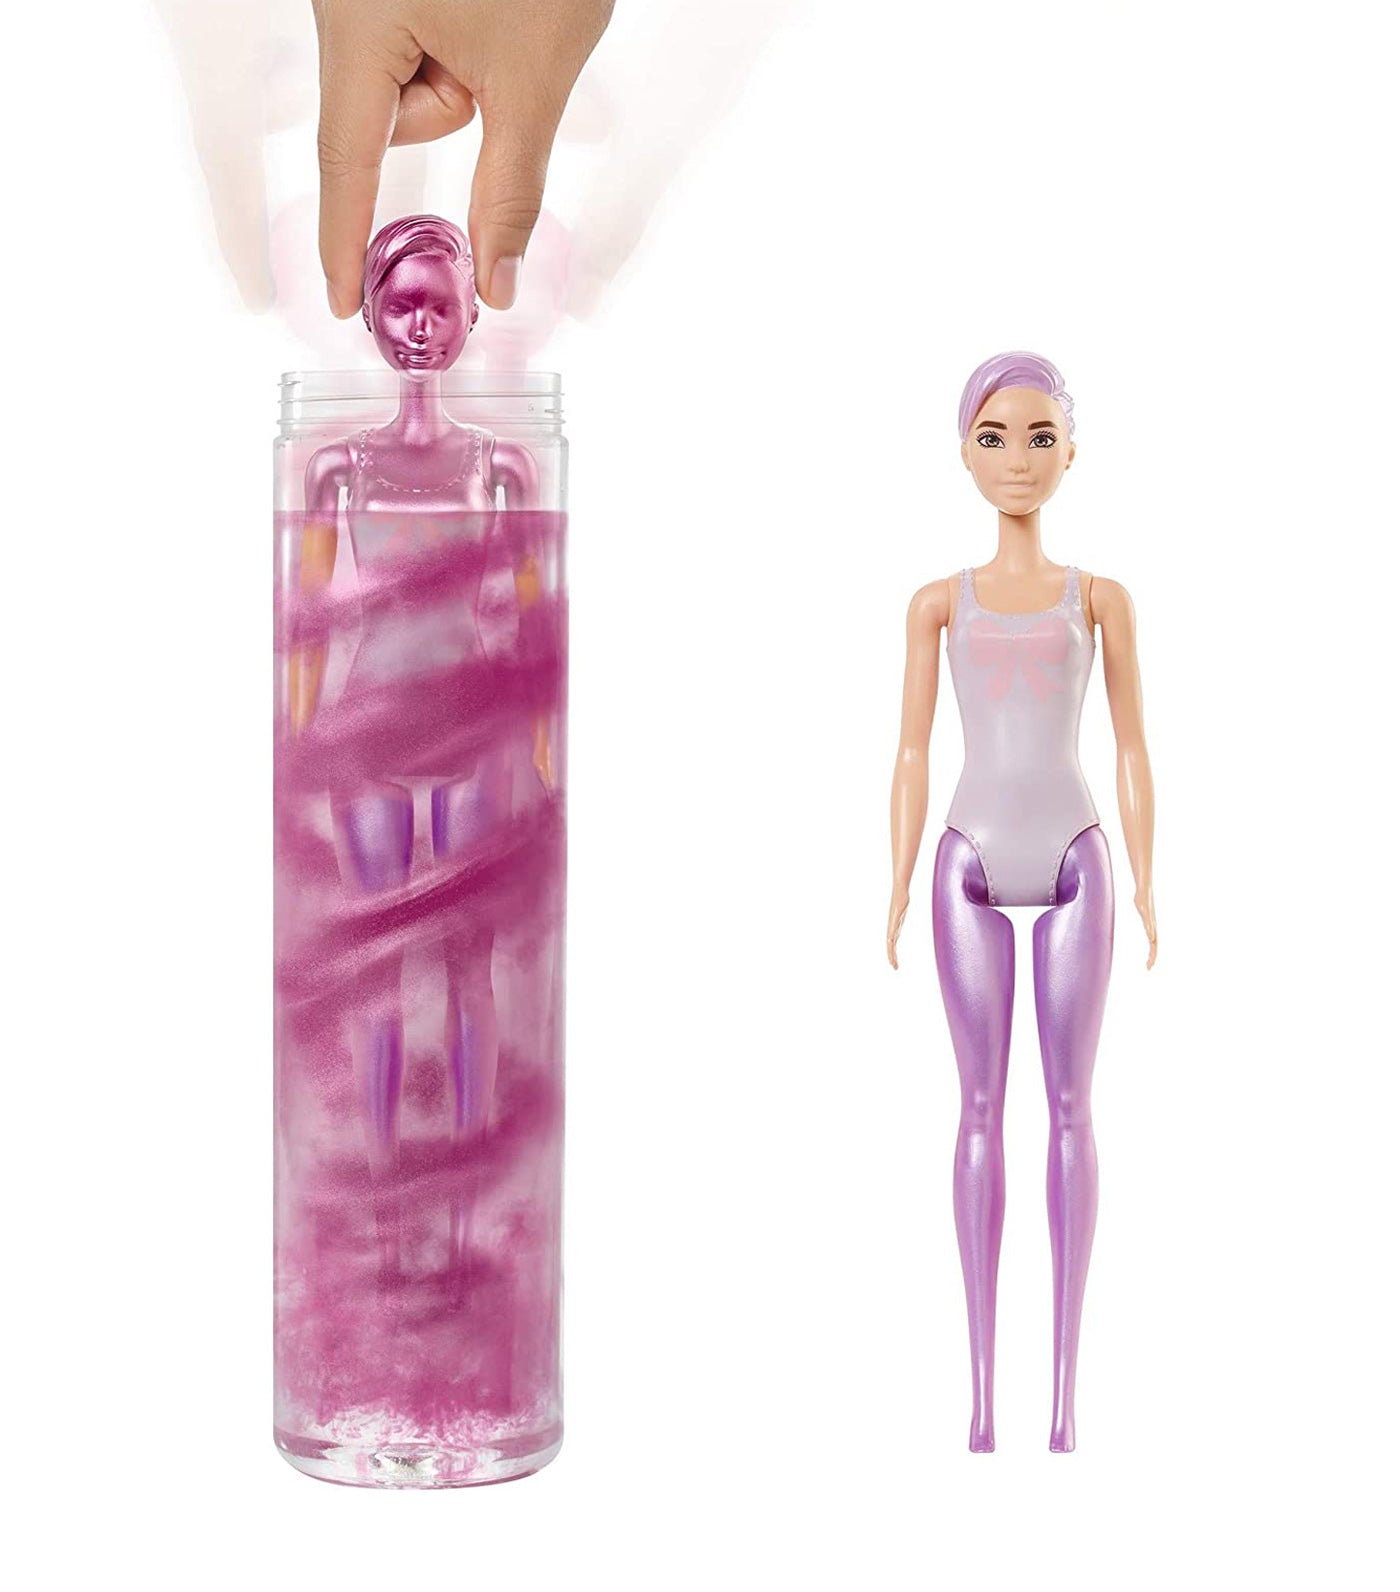 Get the Barbie Look: Products & Procedures